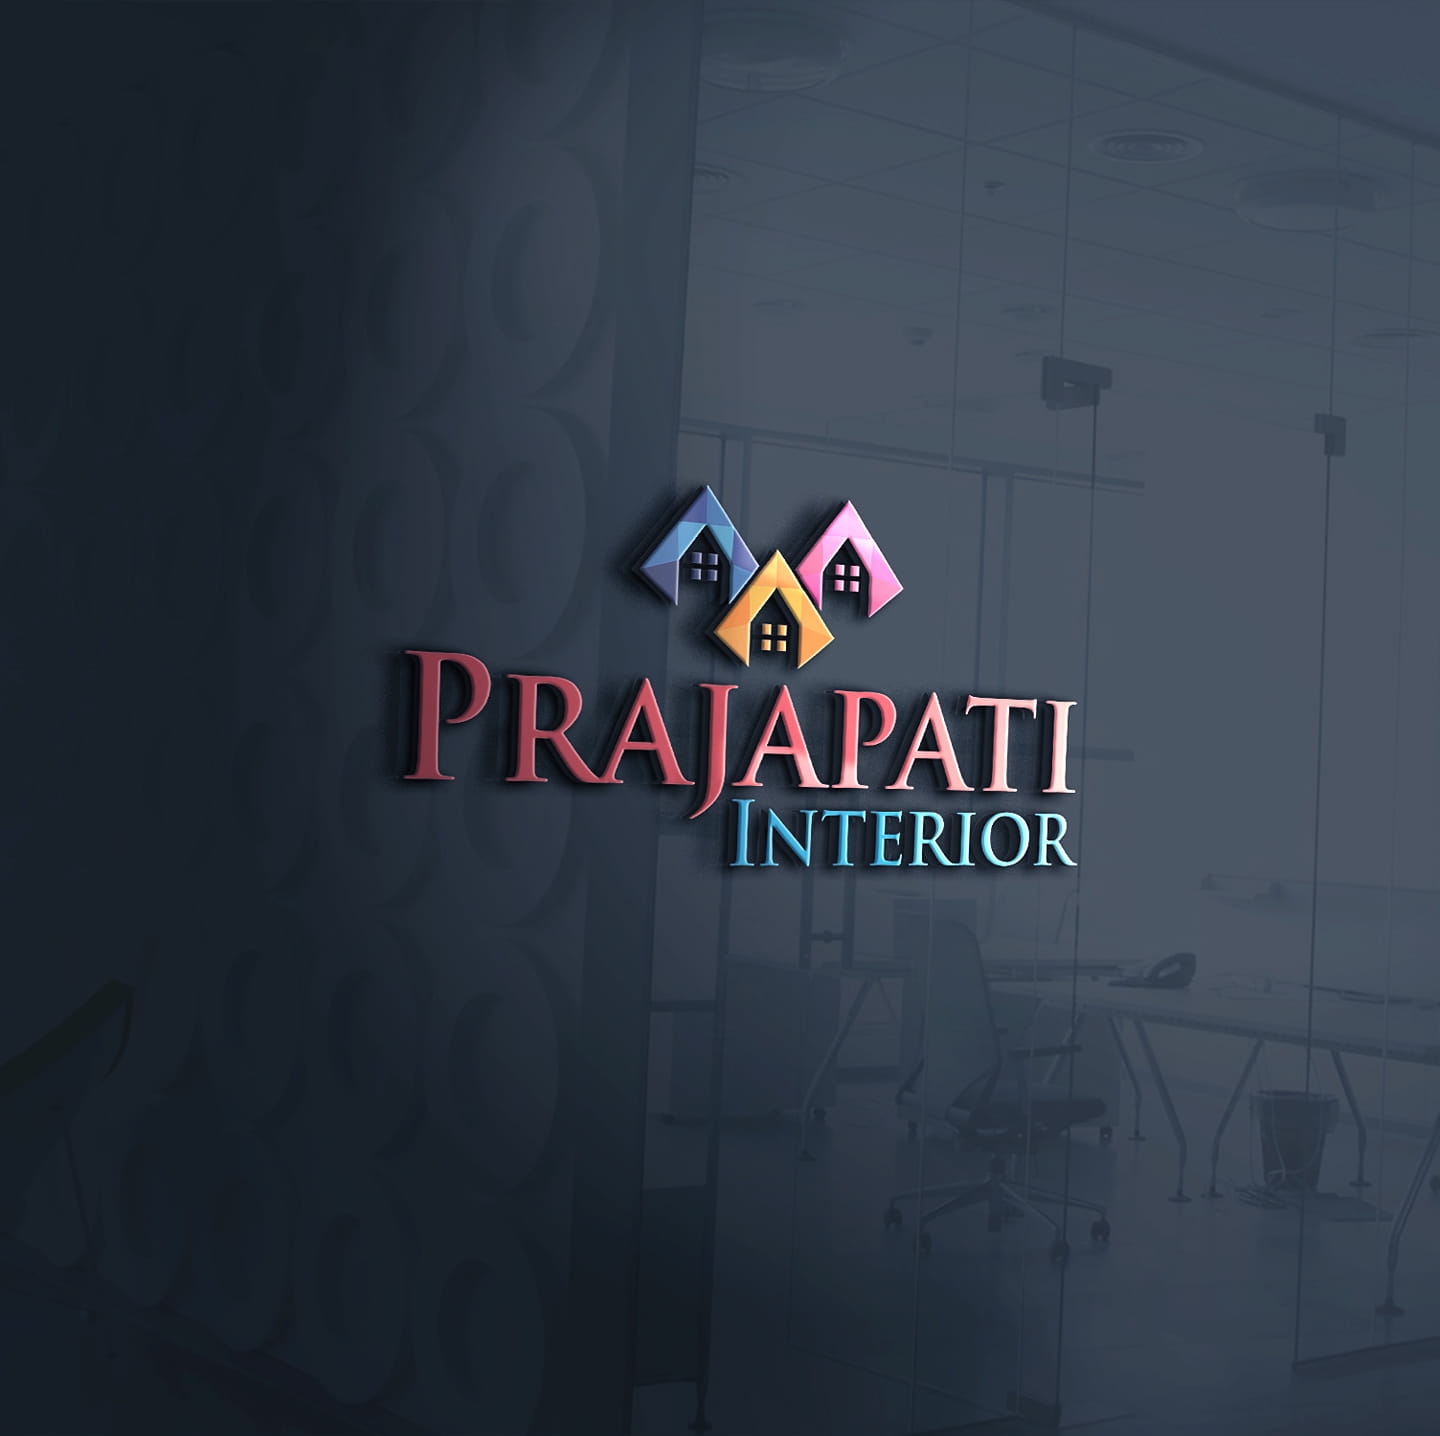 Prajapati Interior|Architect|Professional Services